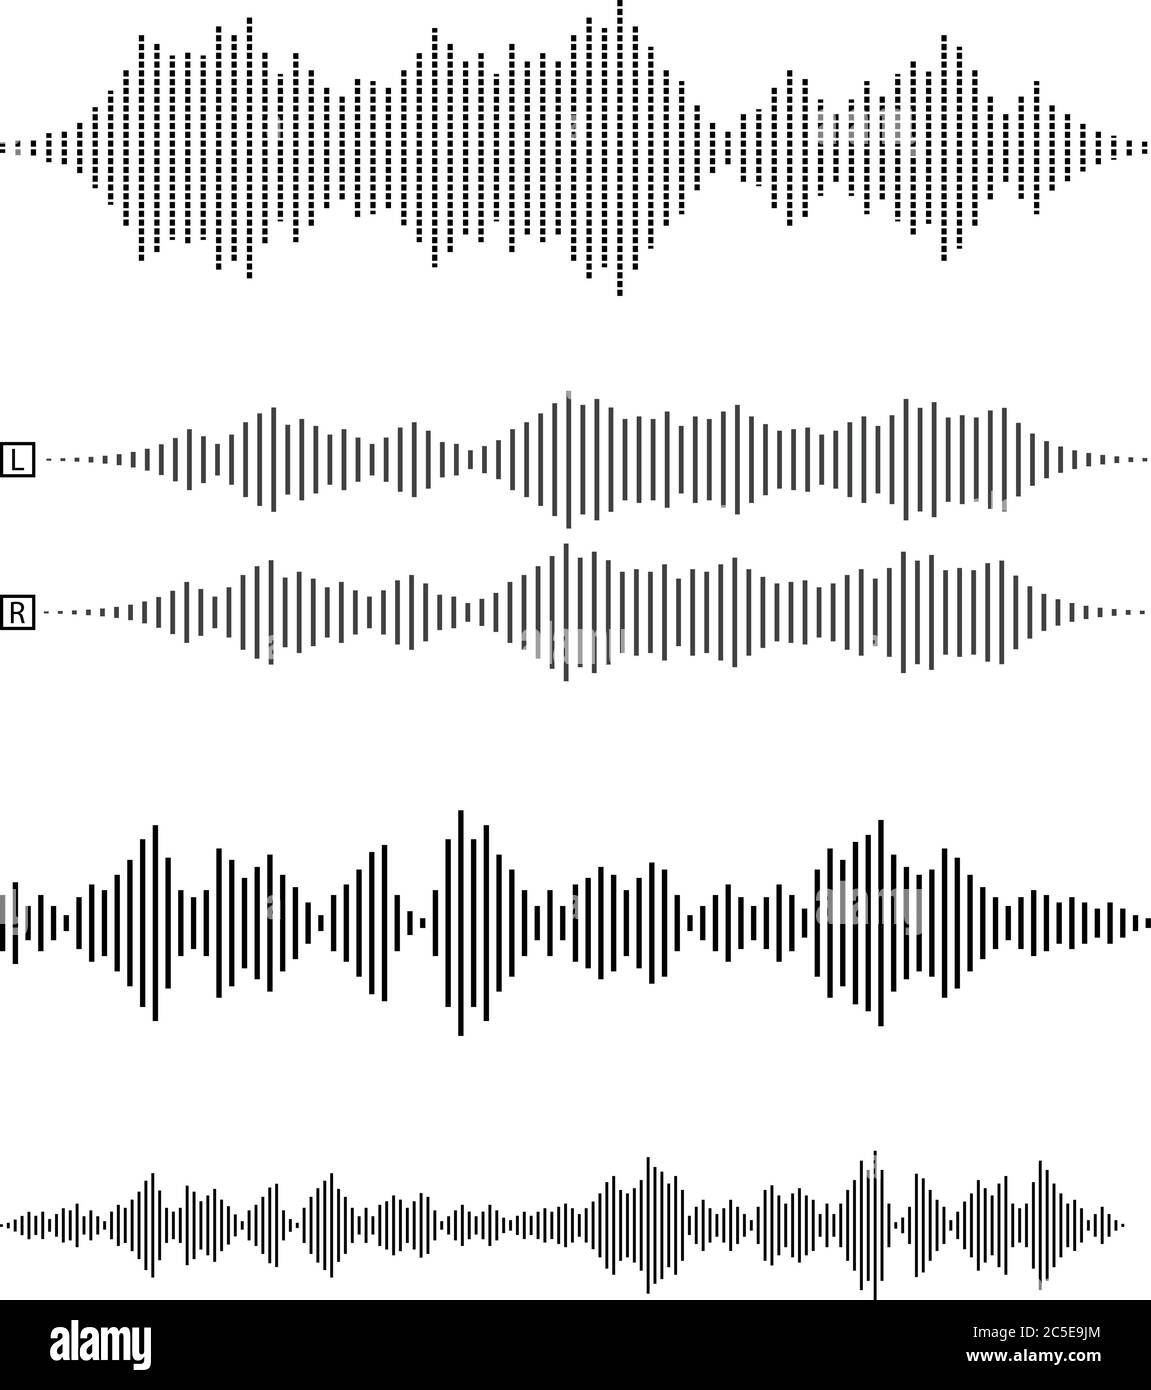 ensemble de formes d'onde audio ou d'ondes sonores, de discours, de bruit ou d'illustration vectorielle de symbole musical Illustration de Vecteur